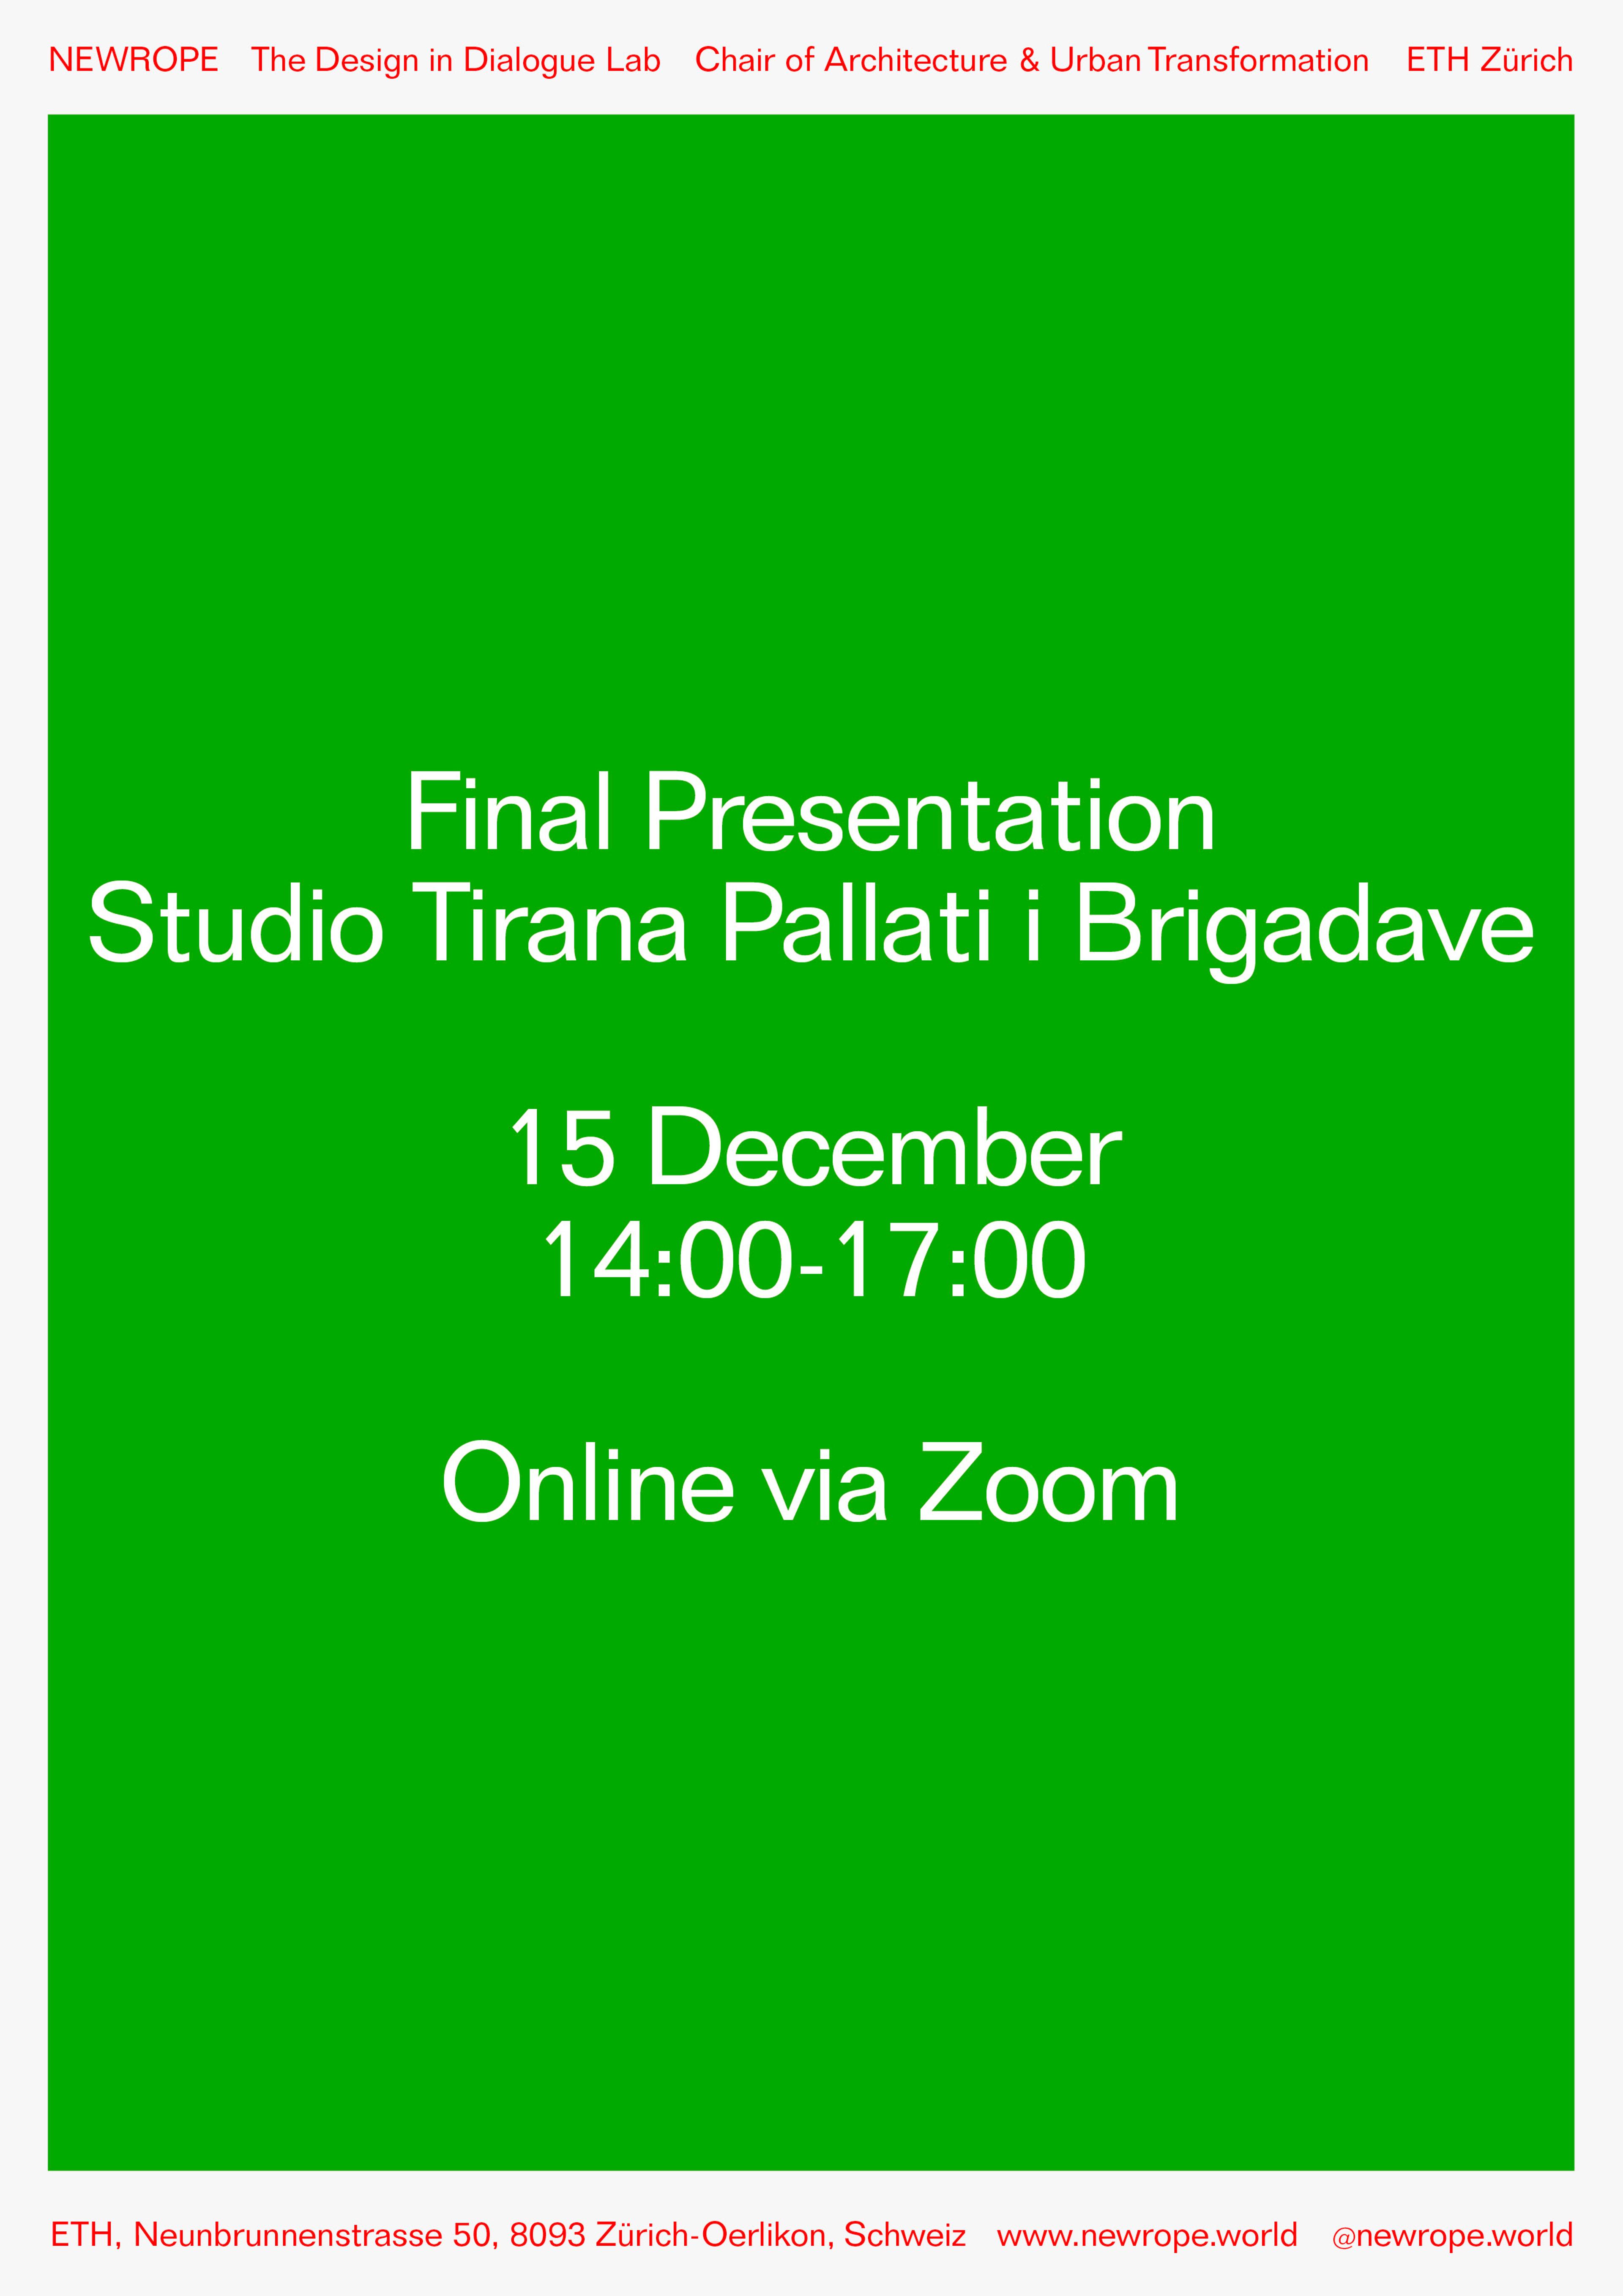 Announcement: Final Presentation and Film Premiere Studio Tirana – Pallati i Brigadave
